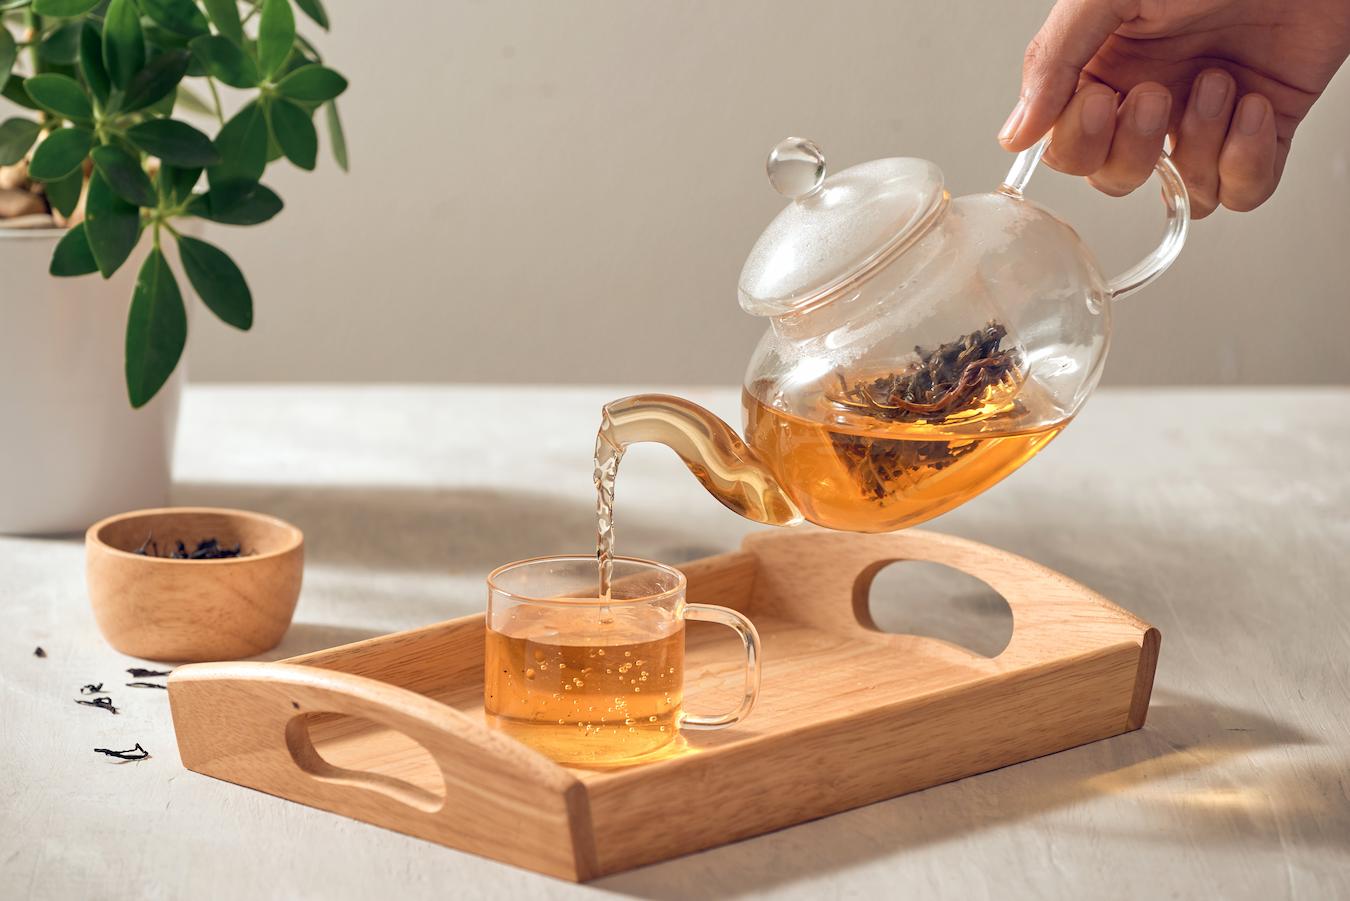 How To Make Green Tea